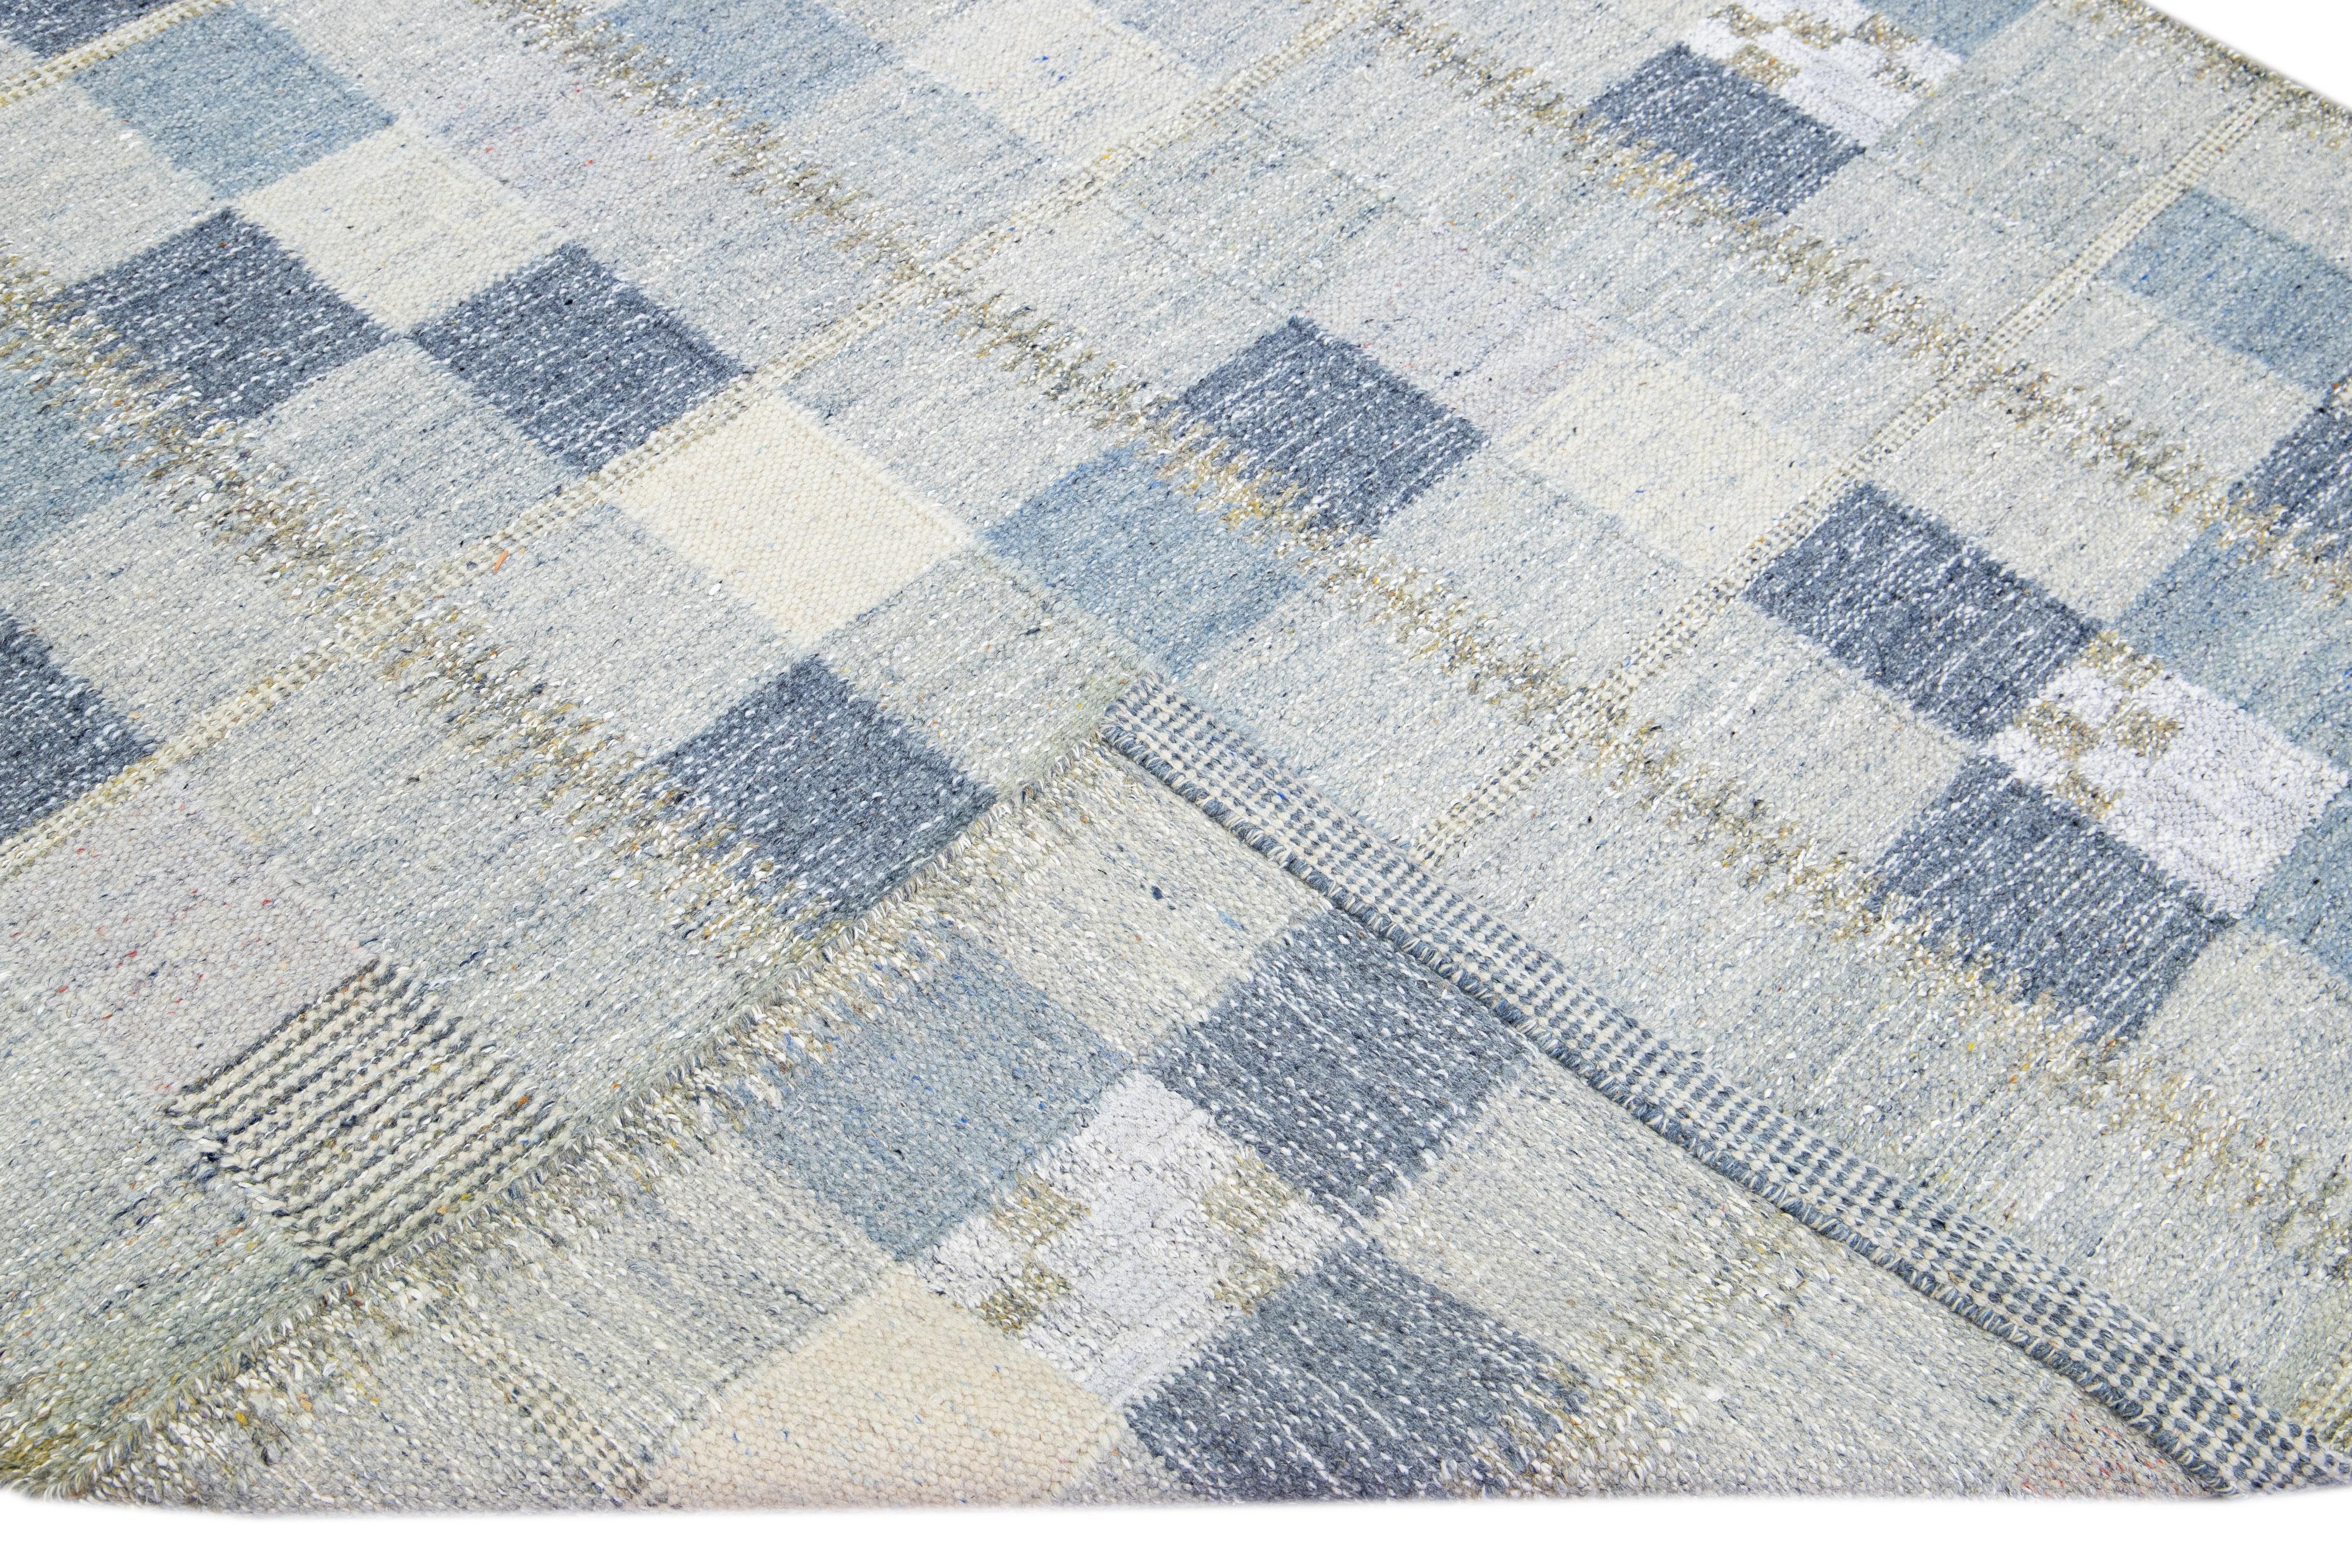 Magnifique tapis en laine de style scandinave avec un champ bleu et gris. Ce tapis moderne présente des accents de blanc et de jaune dans un magnifique motif géométrique.

 Ce tapis mesure : 6'1